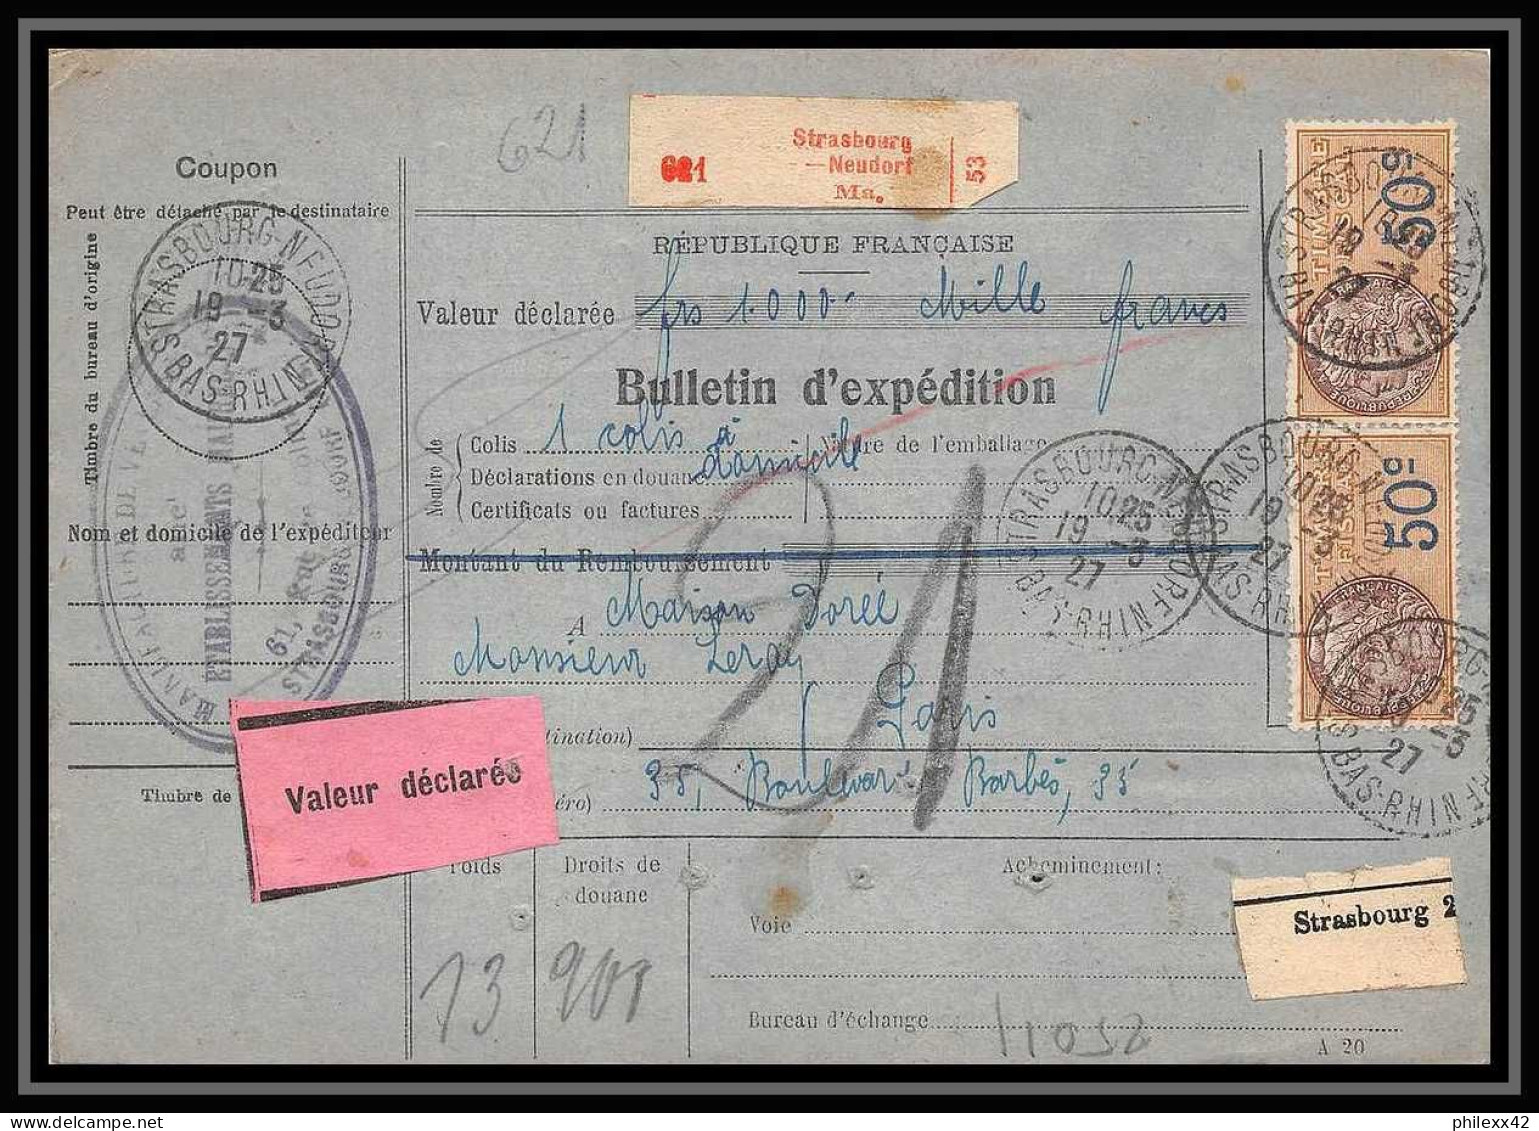 25011 Bulletin D'expédition France Colis Postaux Fiscal Haut Rhin 1927 Strasbourg Semeuse Merson 123 Valeur Déclarée - Storia Postale